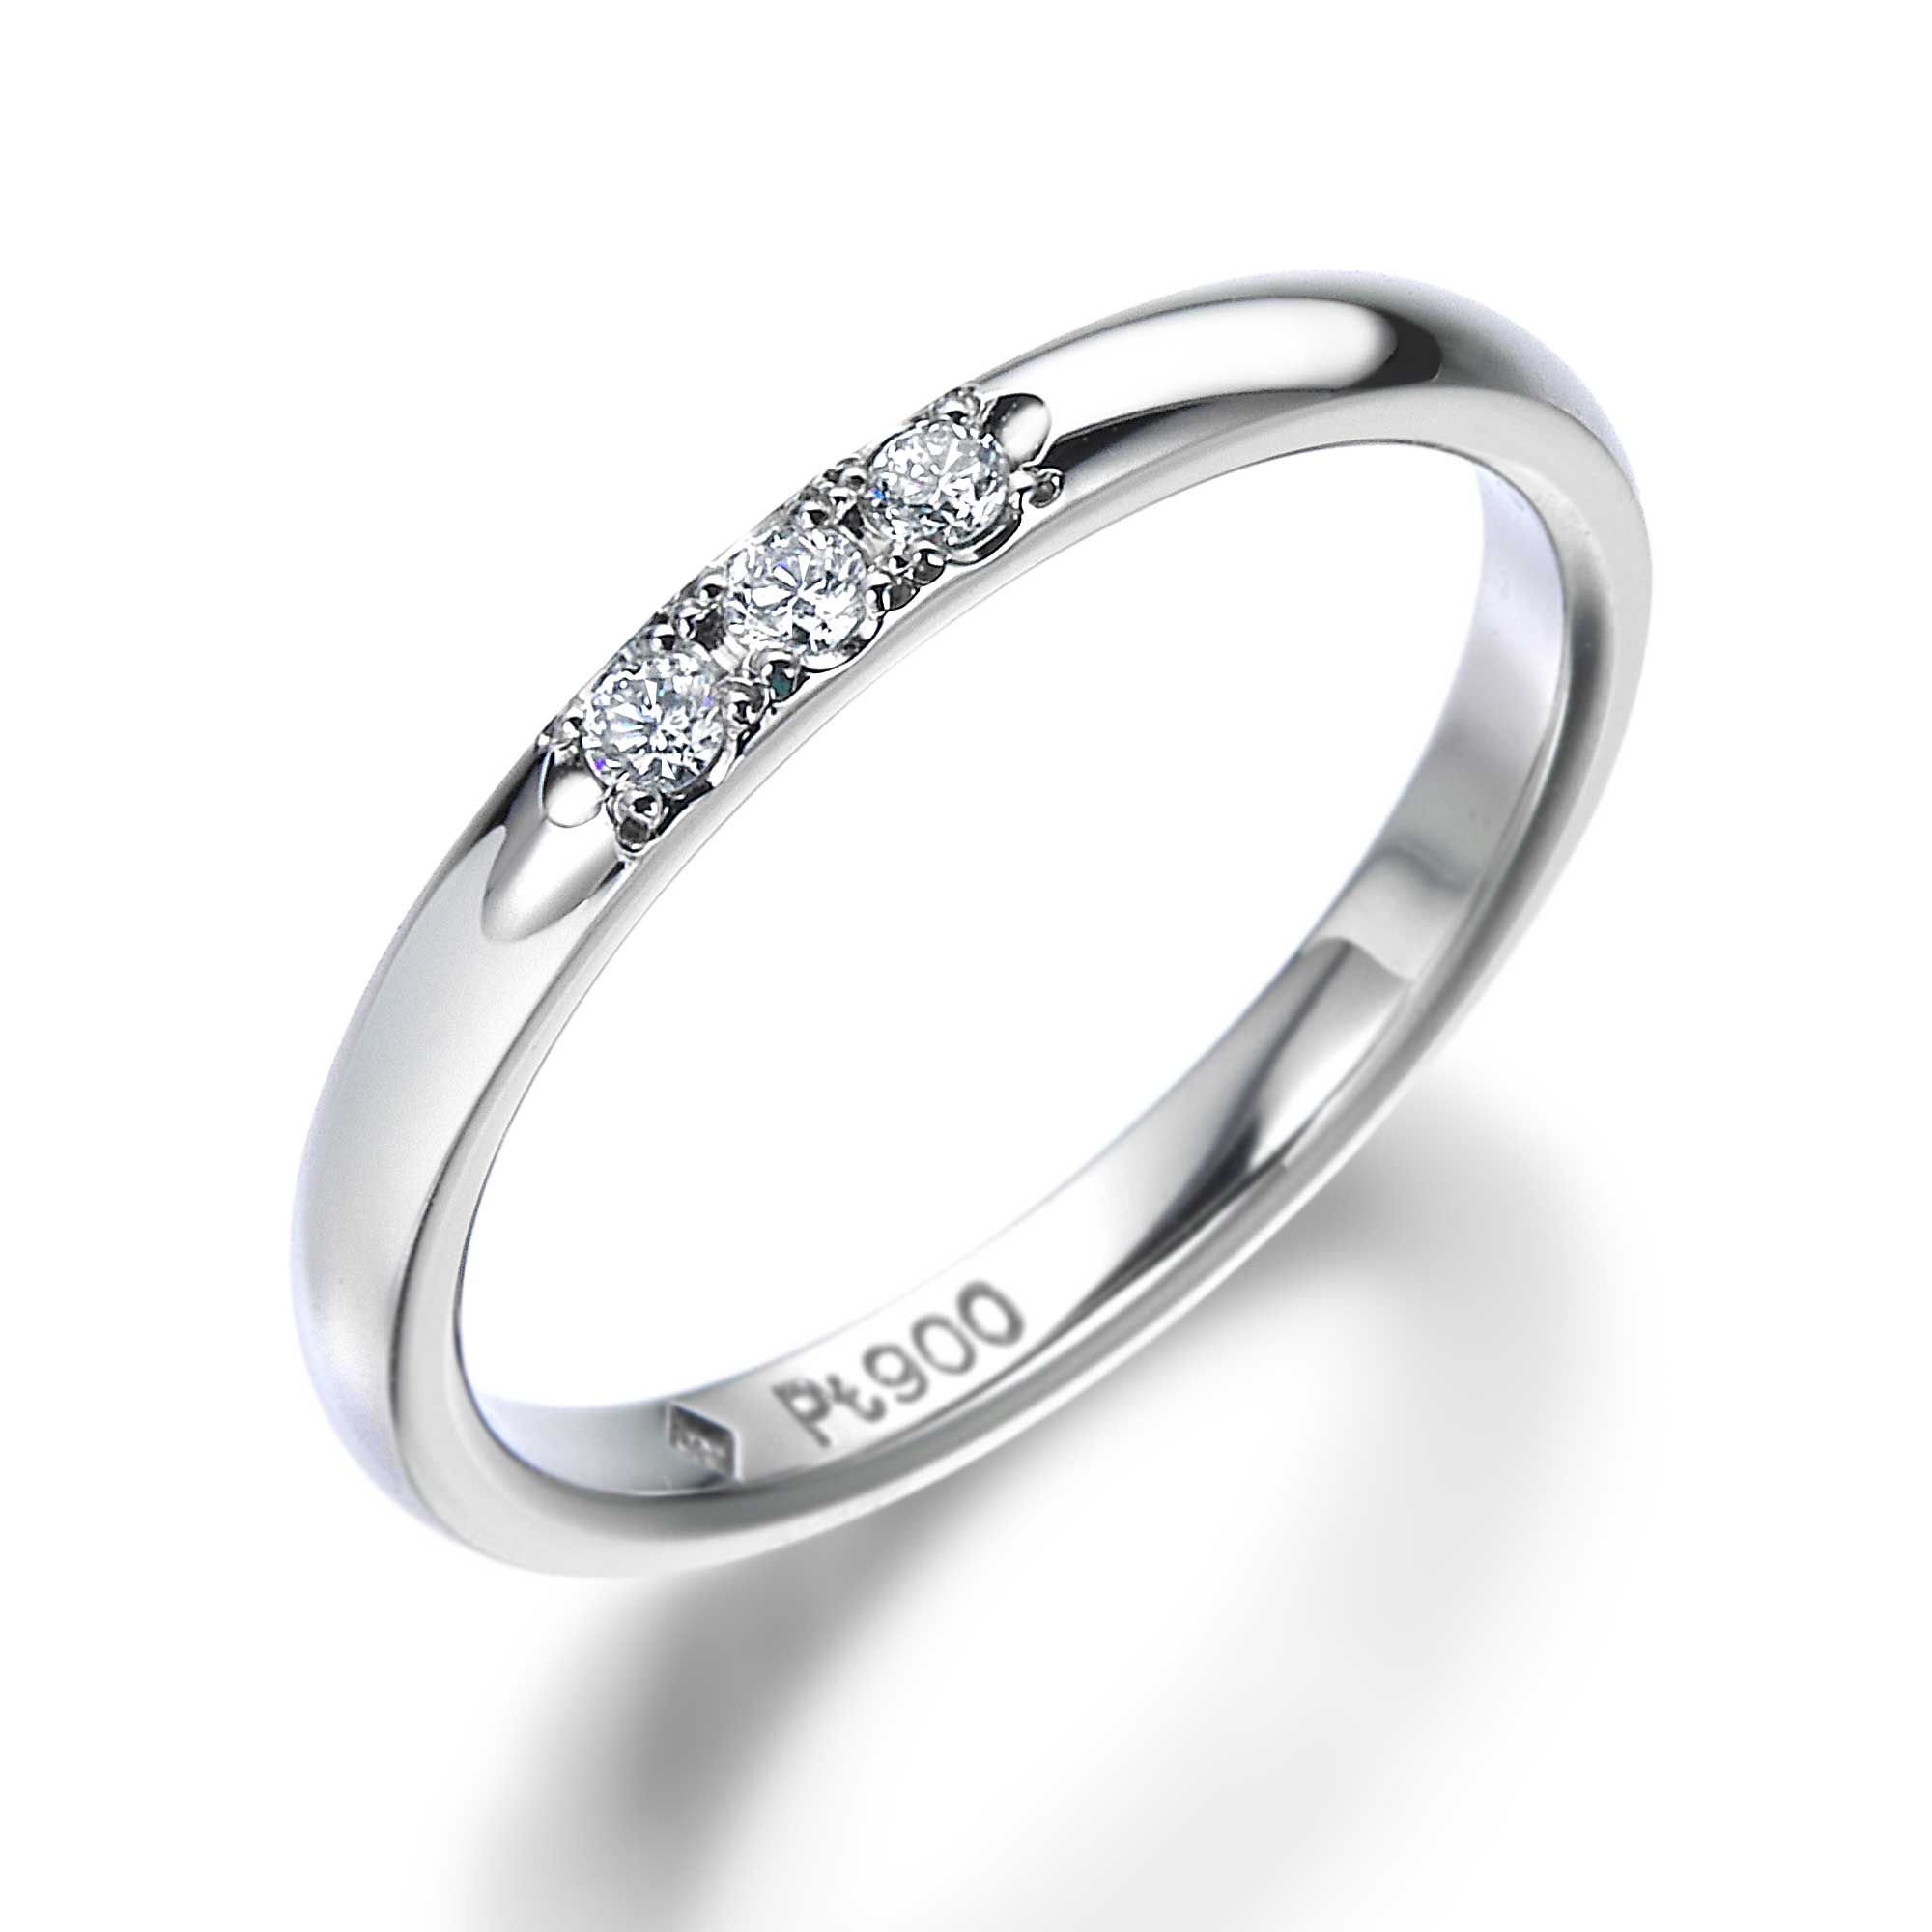 仙台で結婚指輪1 2 3万円台 仙台アエル店 安くて高品質なqdmの結婚指輪 婚約指輪